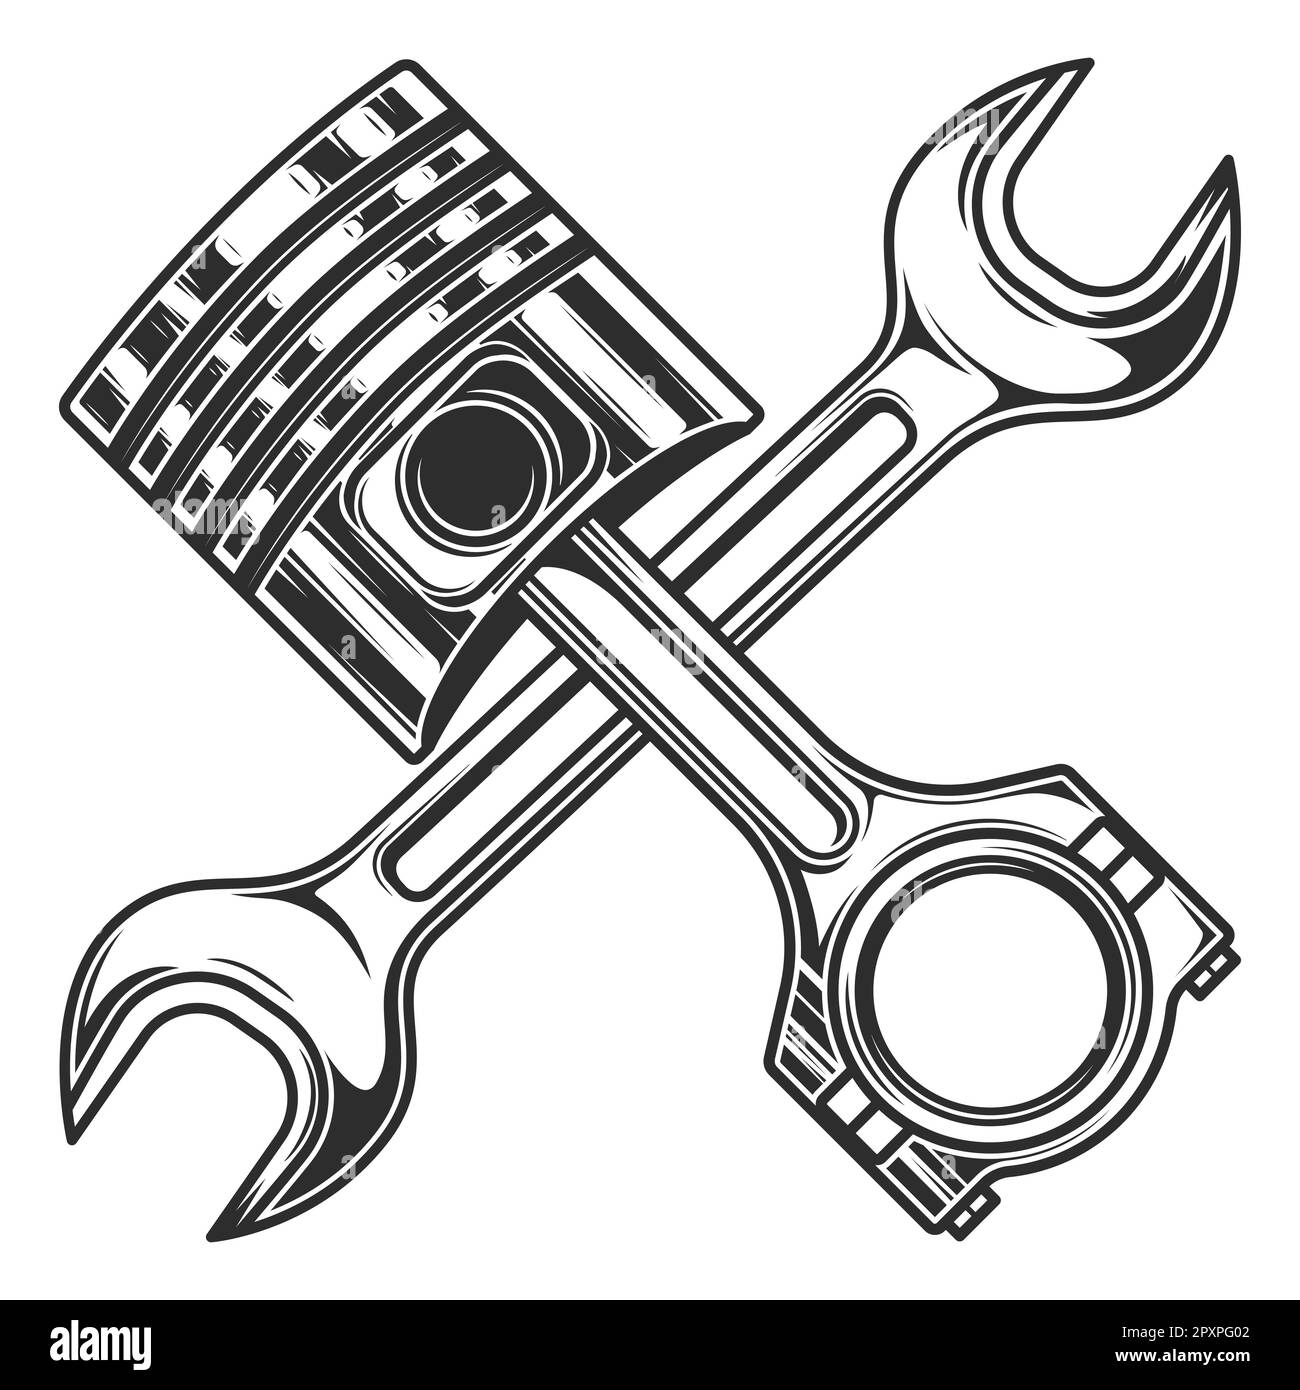 Motorkolben und mechanischer Schraubenschlüssel für Service-Reparatur-PKW  und Lkw-Geschäft auf weißem Hintergrund isolierte monochrome Abbildung  Stockfotografie - Alamy